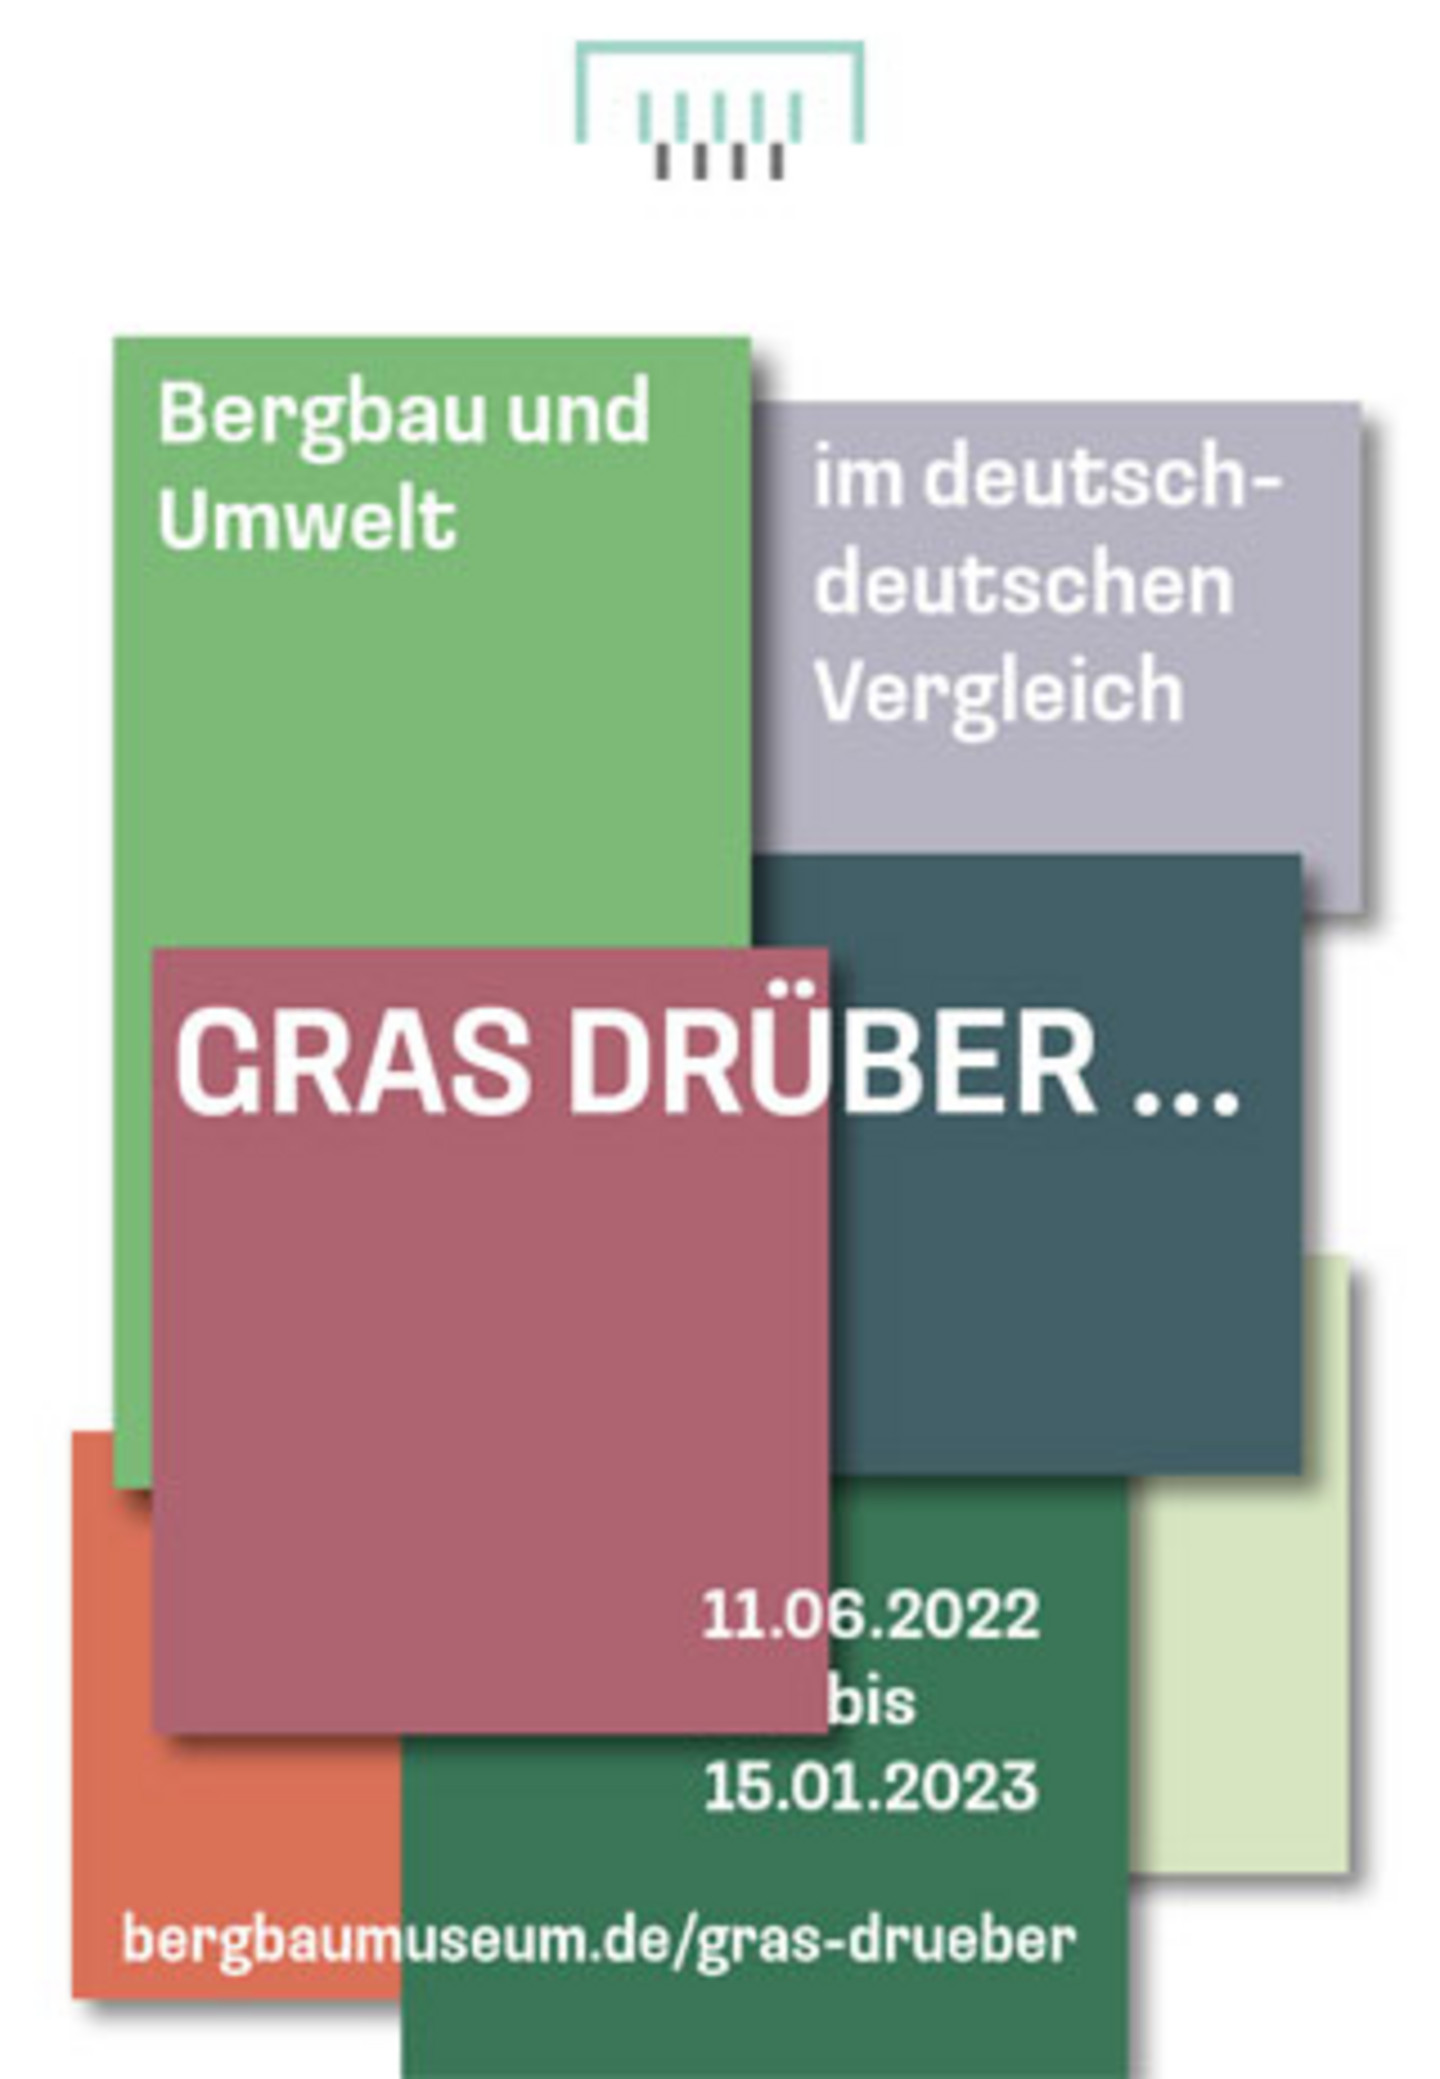 Ein Plakat mit verschiedend-farbigen Quadraten und der weißen Schrift "Bergbau und Umwelt im deutsch-deutschen Vergleich - GRAS DRÜBER..."